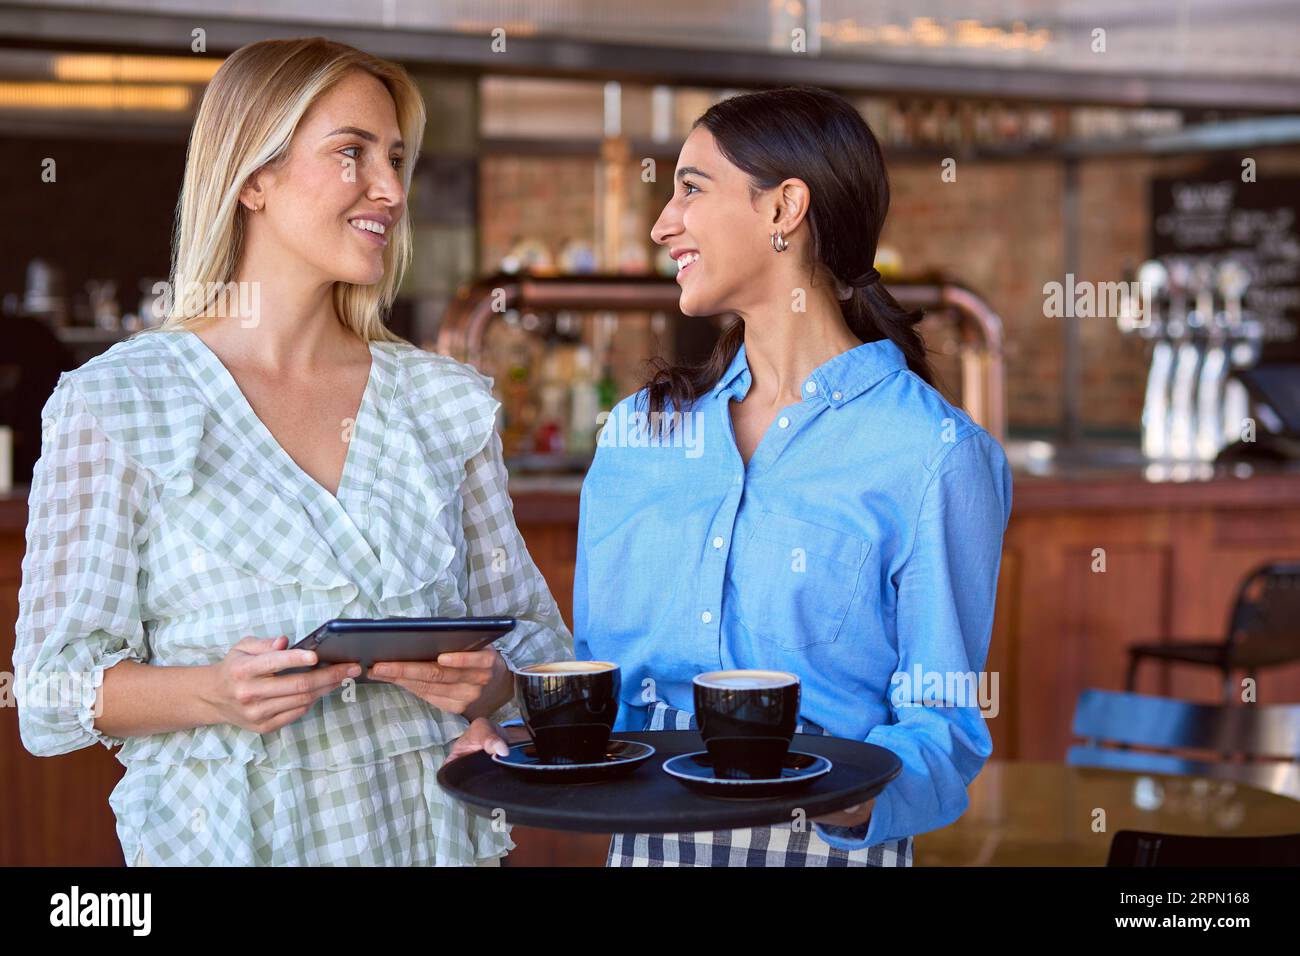 Femme Manager avec tablette numérique et serveuse travaillant dans un restaurant ou un café Banque D'Images